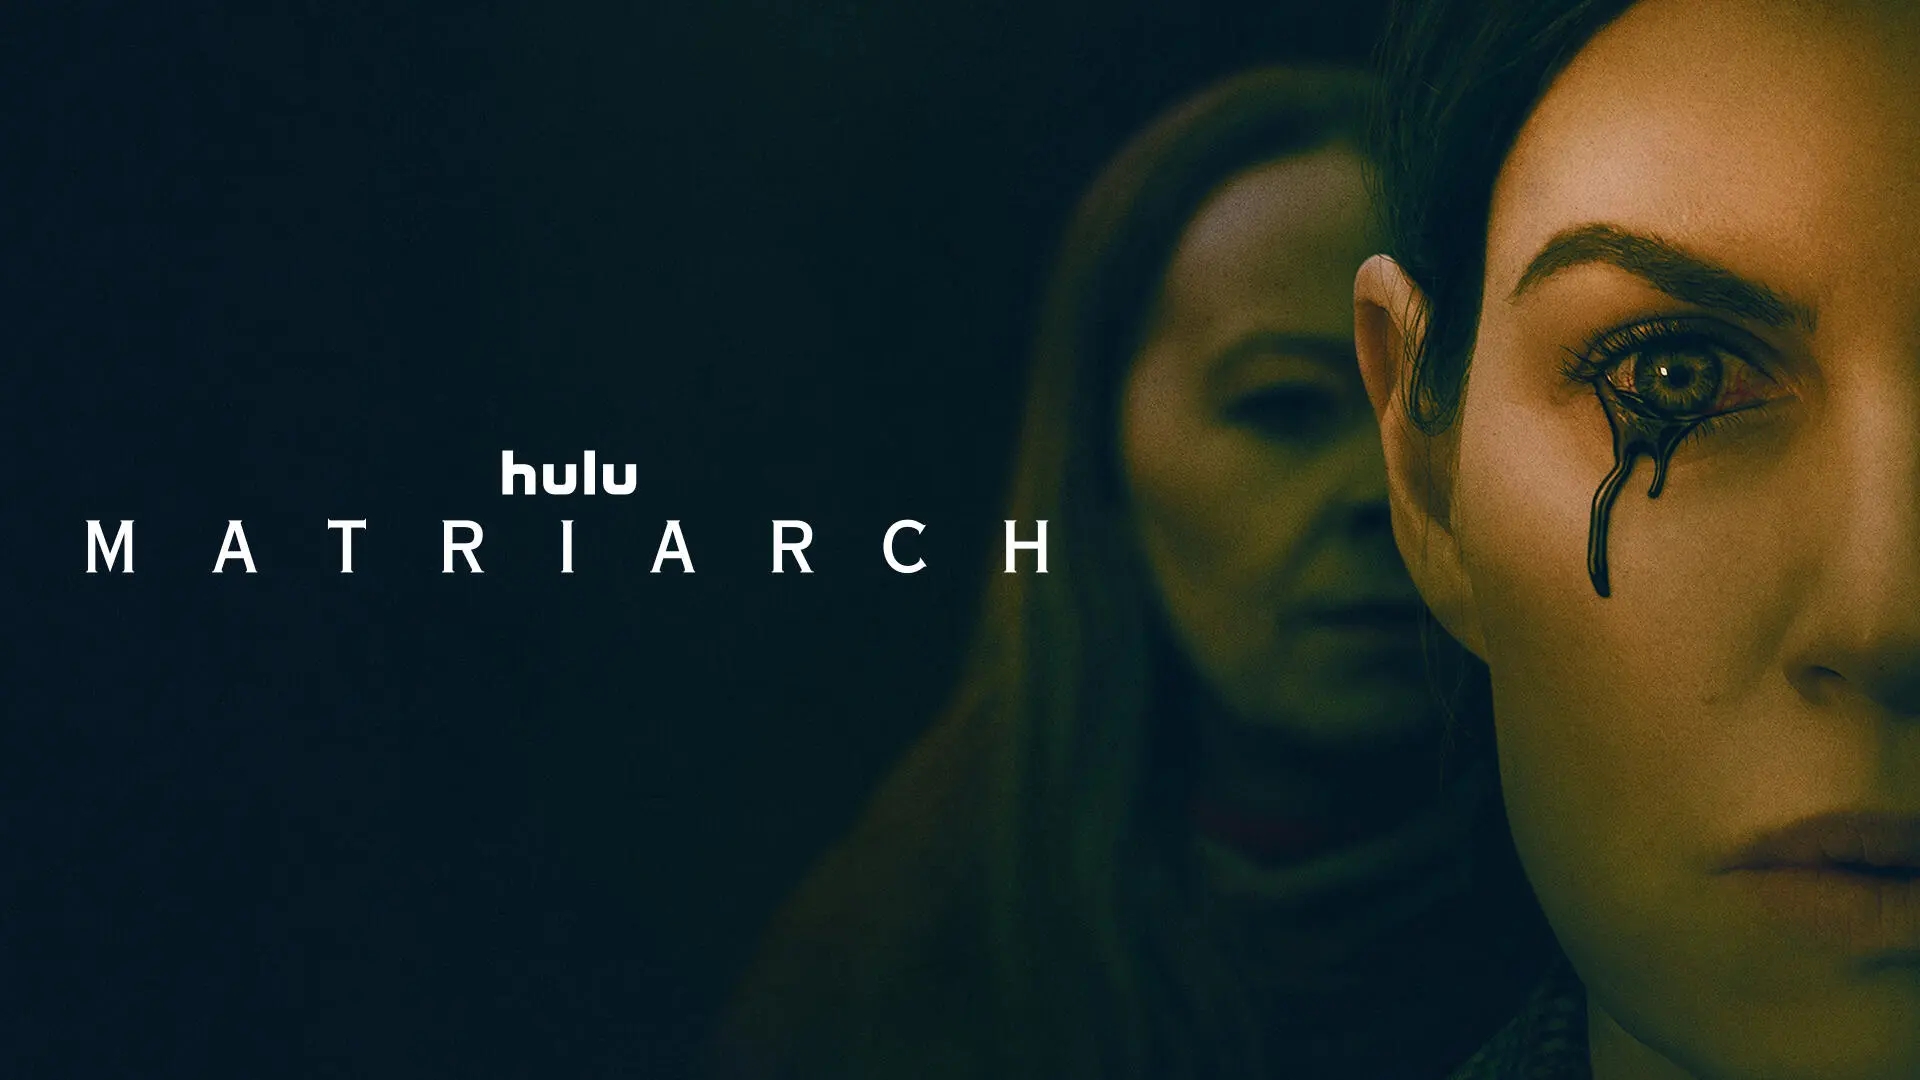 Title art for 2022 Hulu Original horror film Matriarch